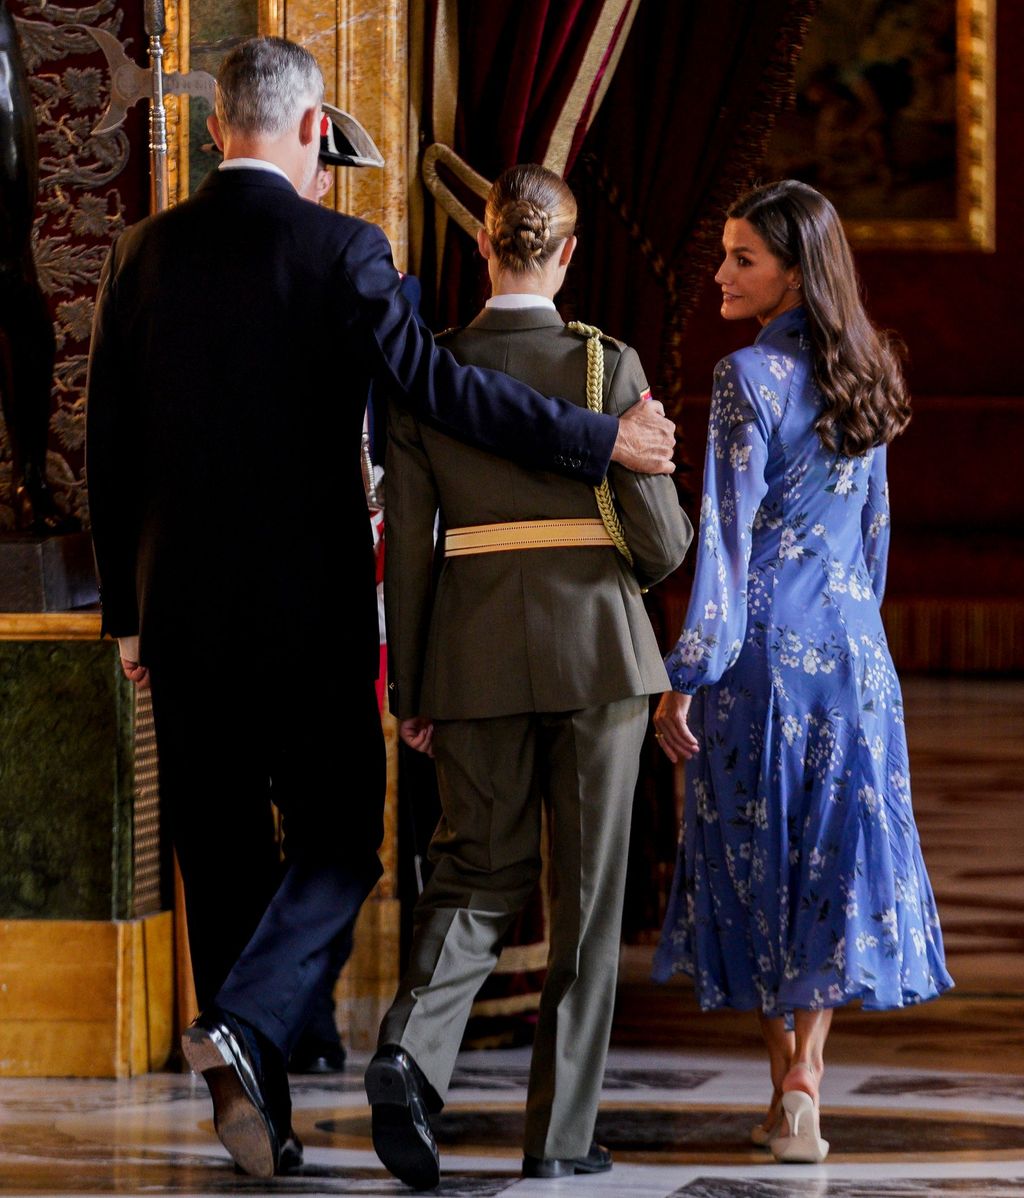 La princesa Leonor está siguiendo el ejemplo de sus padres dentro de la institución